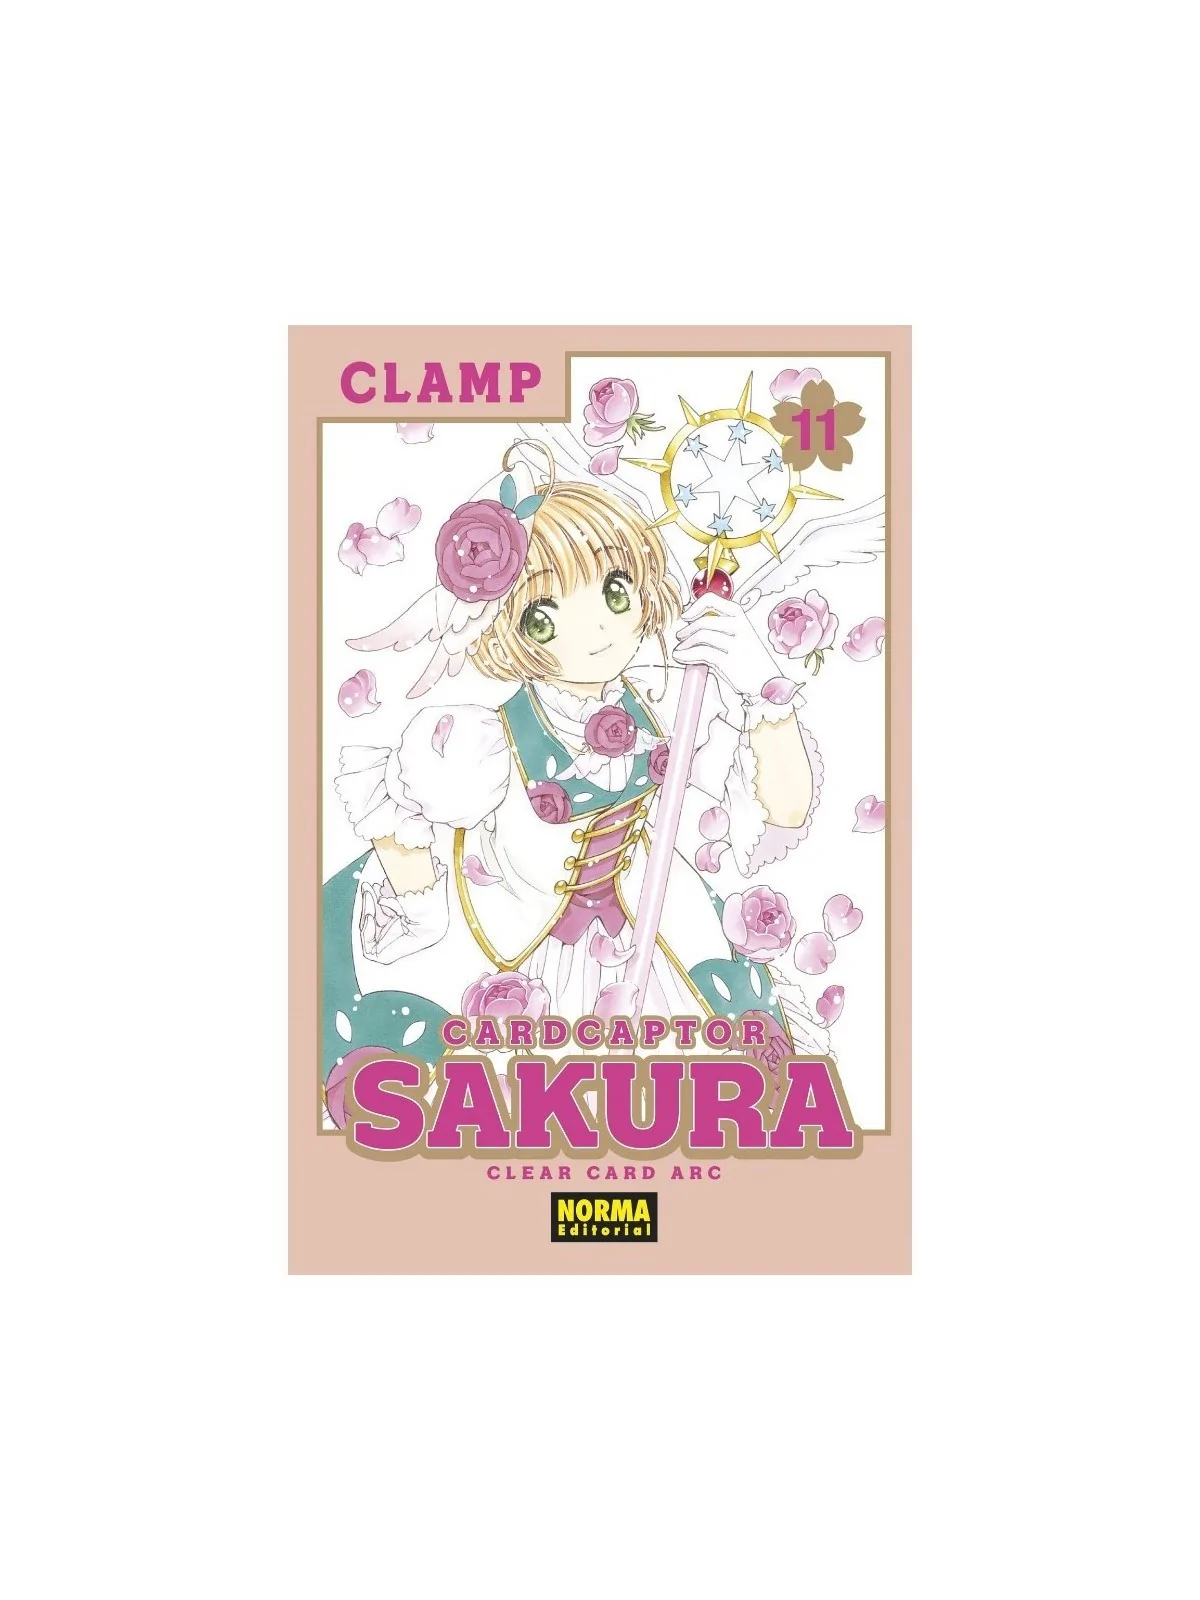 Comprar Cardcaptor Sakura Clear Card Arc 11 barato al mejor precio 8,5